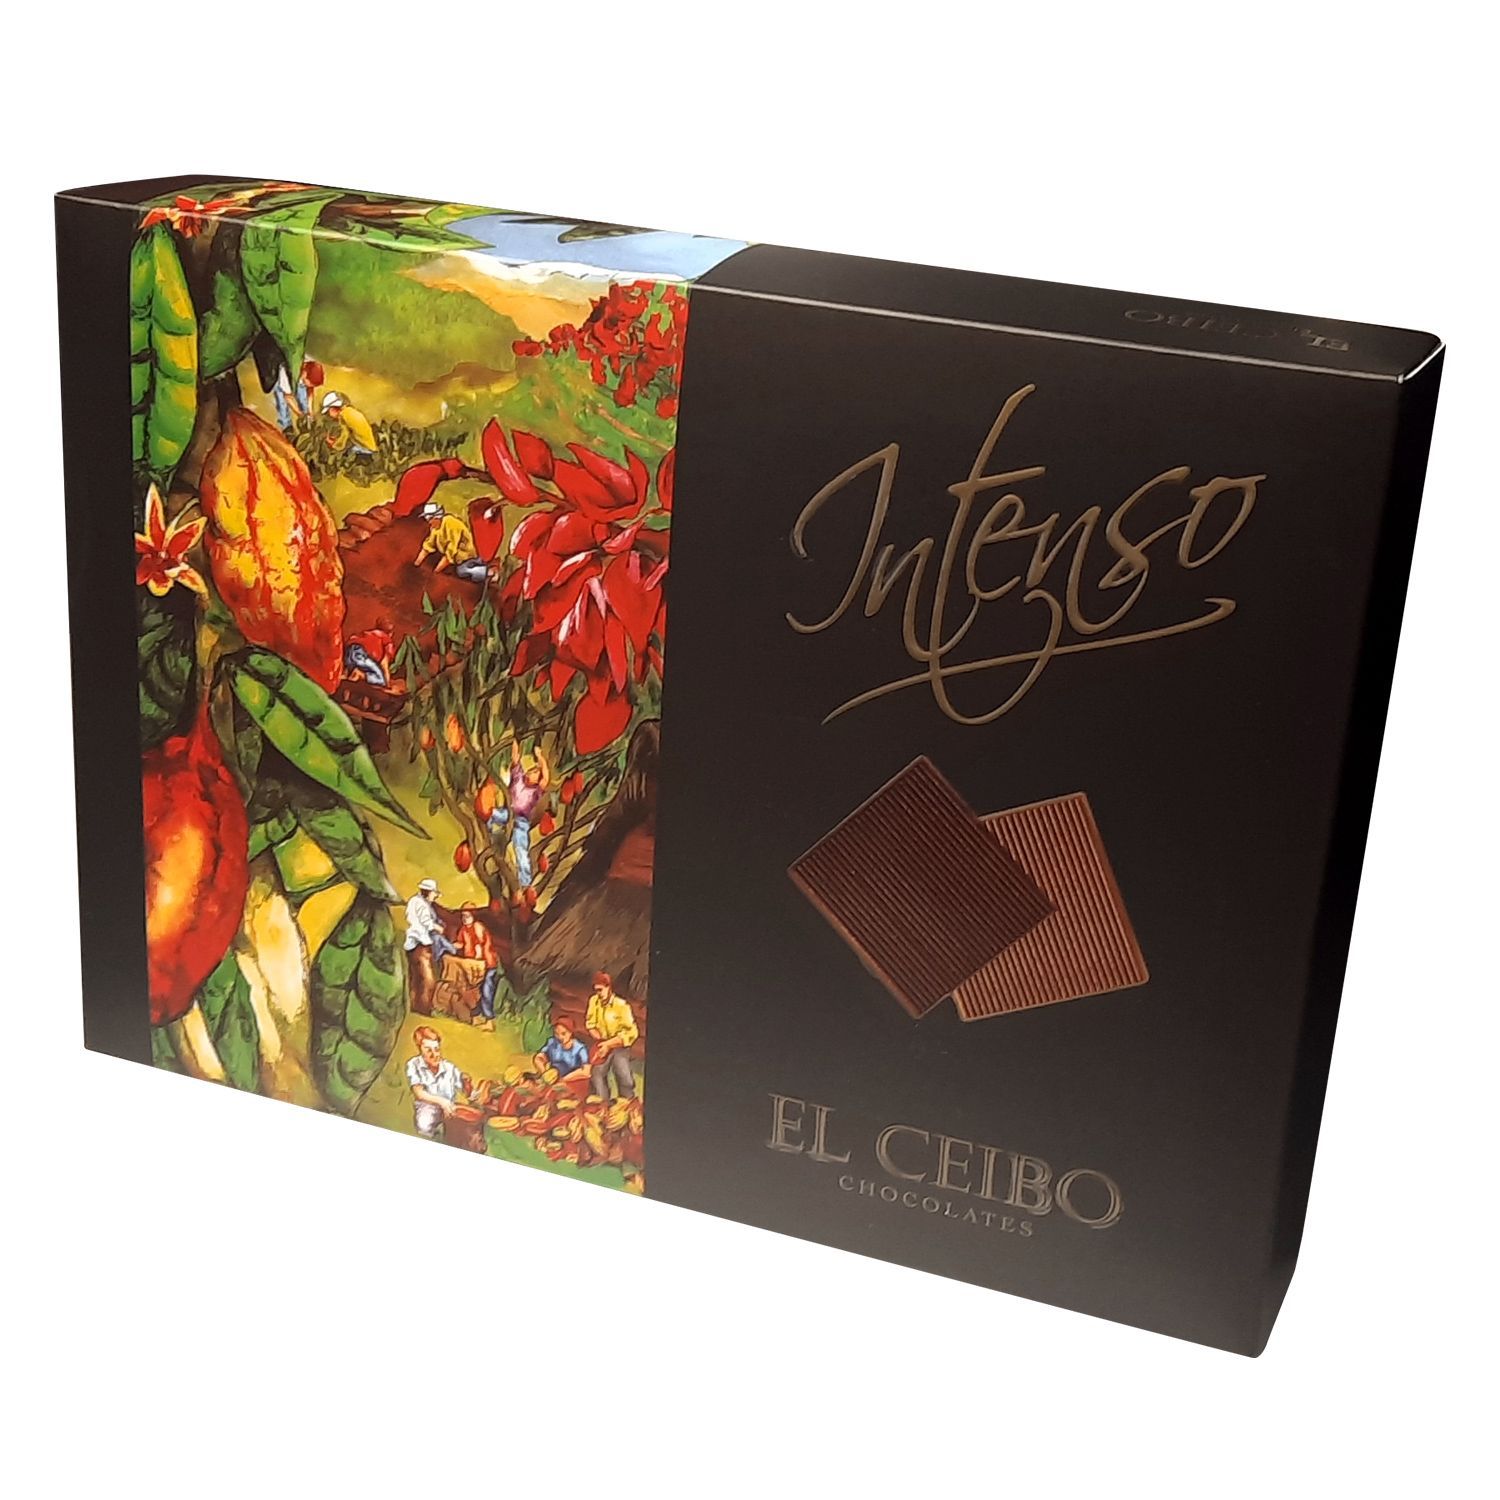 Intenso - Chocolate El Ceibo